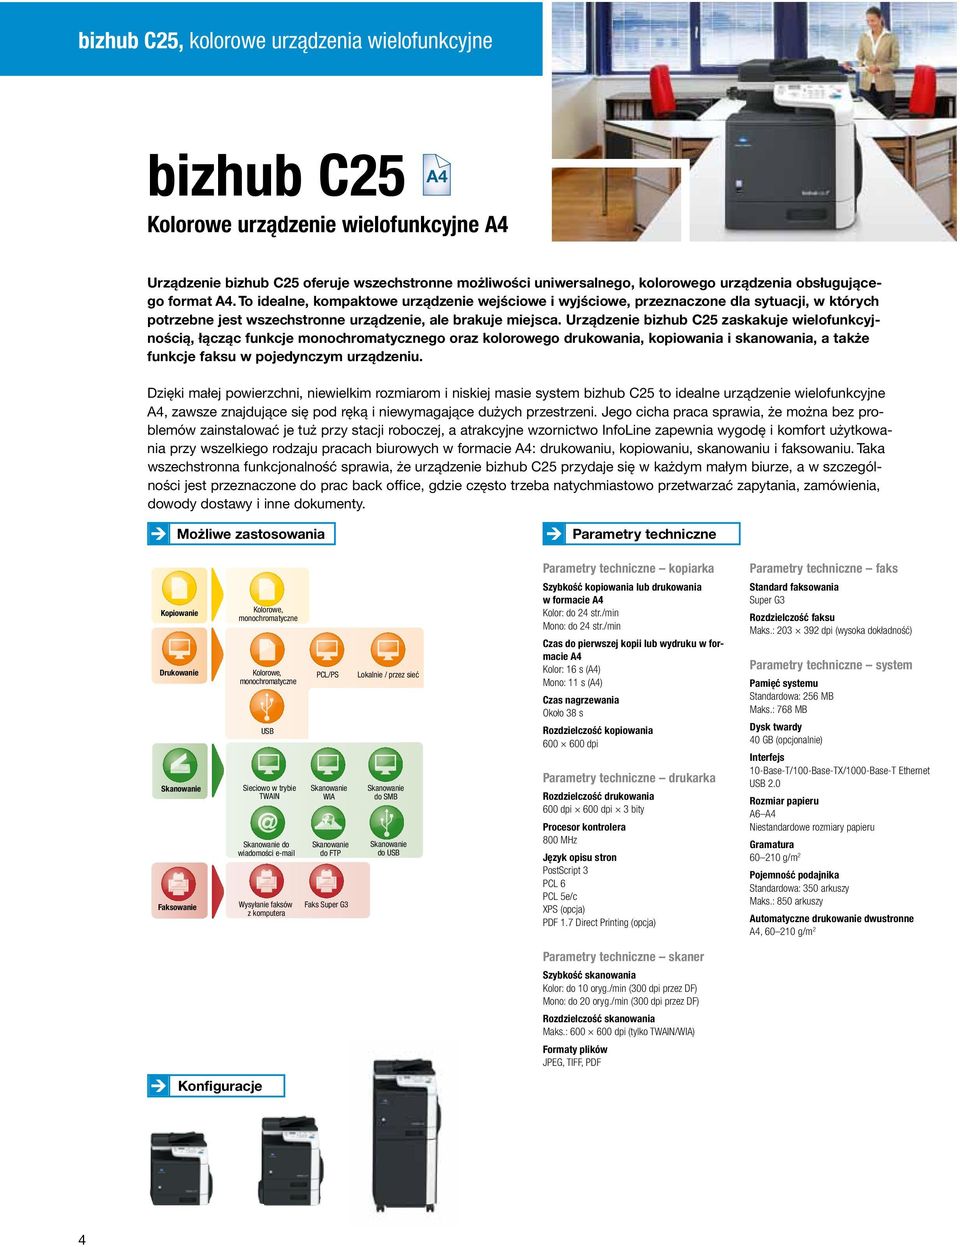 Urządzenie bizhub C25 zaskakuje wielofunkcyjnością, łącząc funkcje go oraz kolorowego drukowania, kopiowania i skanowania, a także funkcje faksu w pojedynczym urządzeniu.